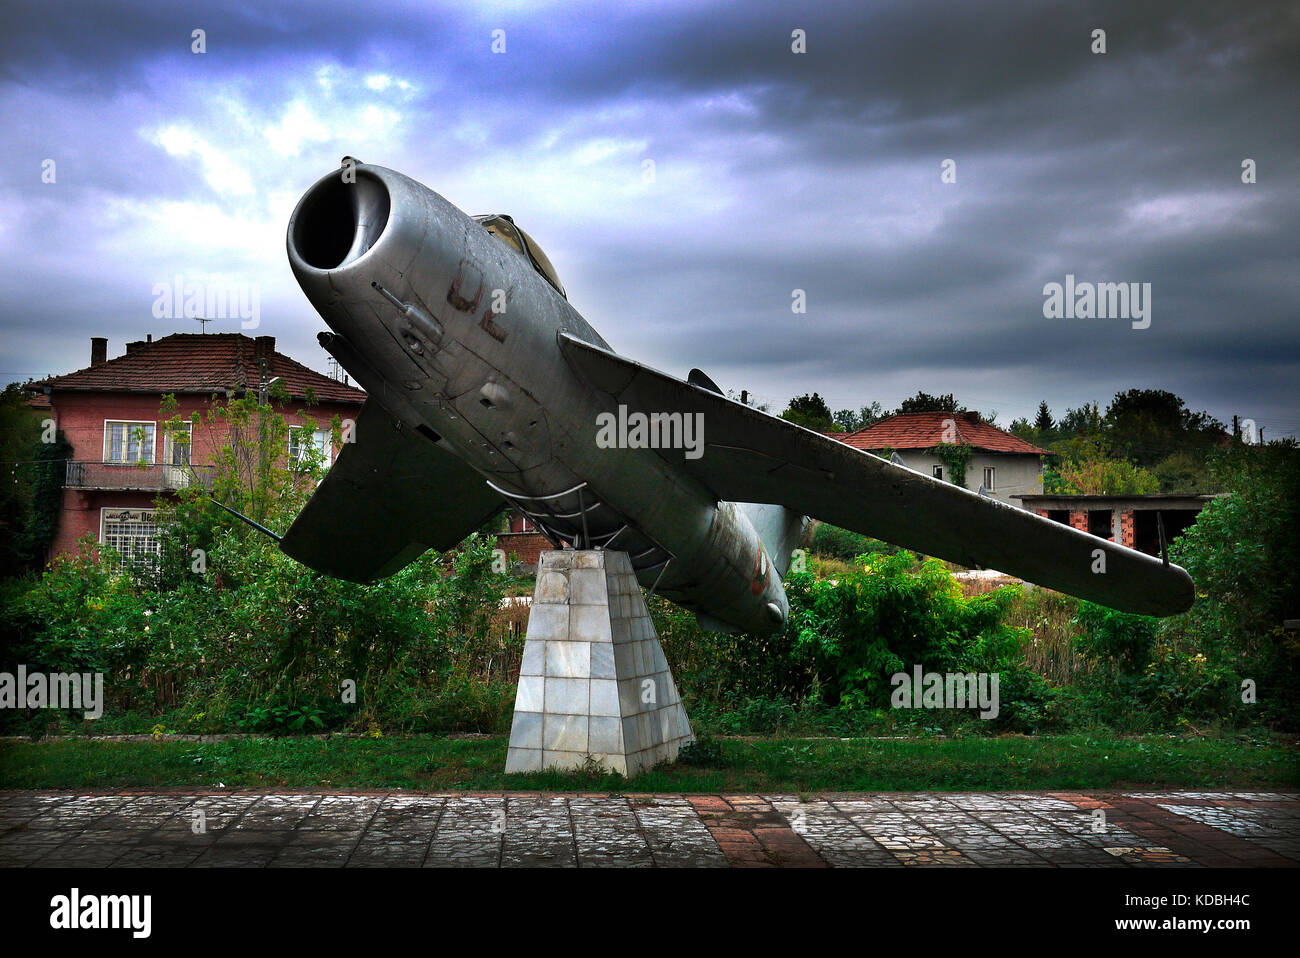 Mig fighter aircraft sul display nel villaggio di Kamenets in Pleven provincia di Bulgaria. Foto Stock